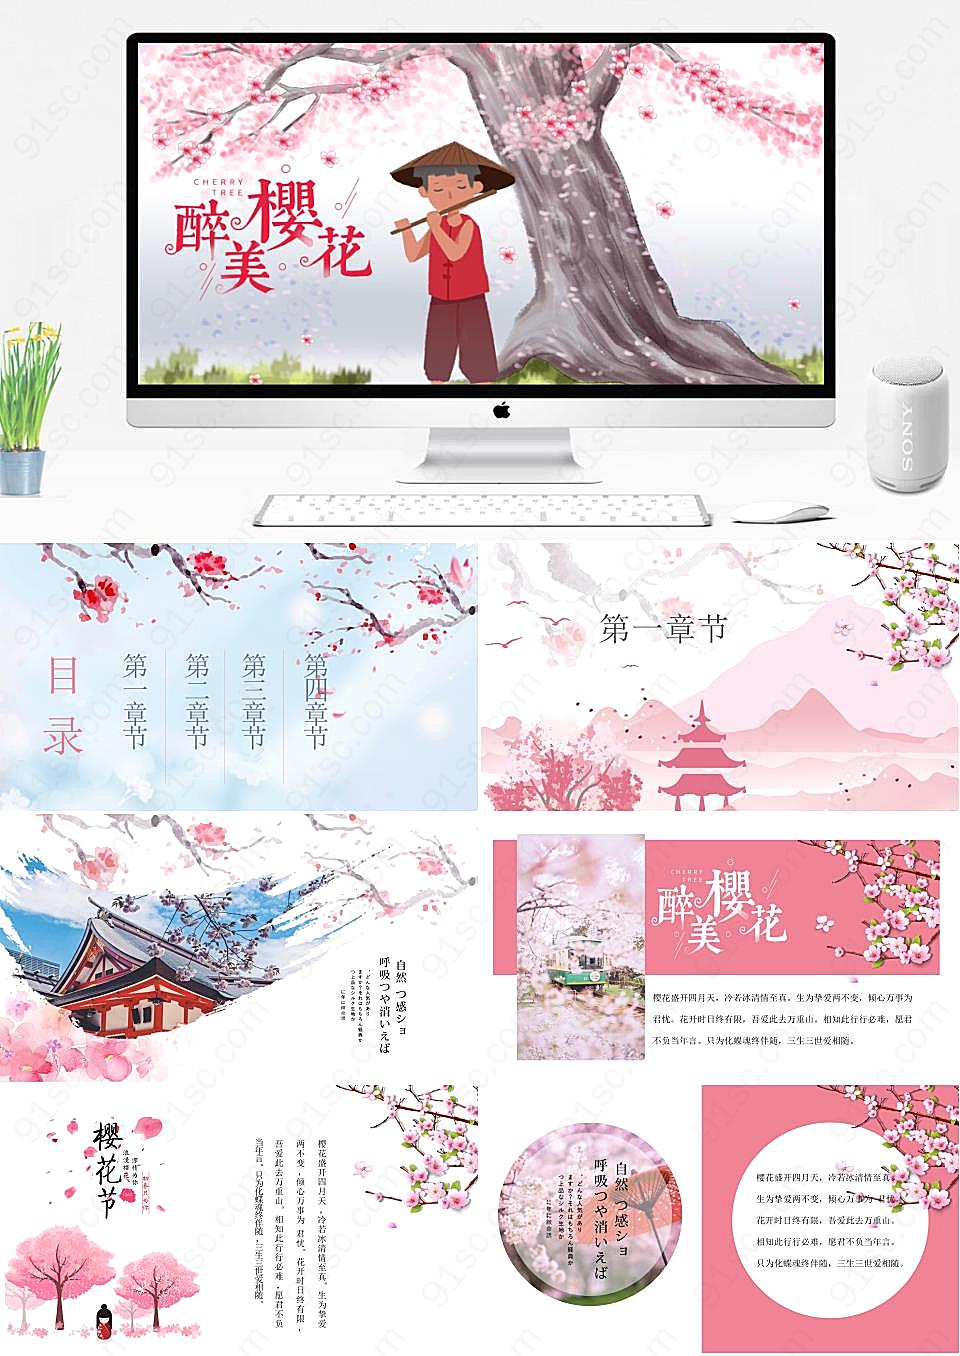 清新醉美的樱花日本旅游演示文稿素材旅游旅行PPT模板下载